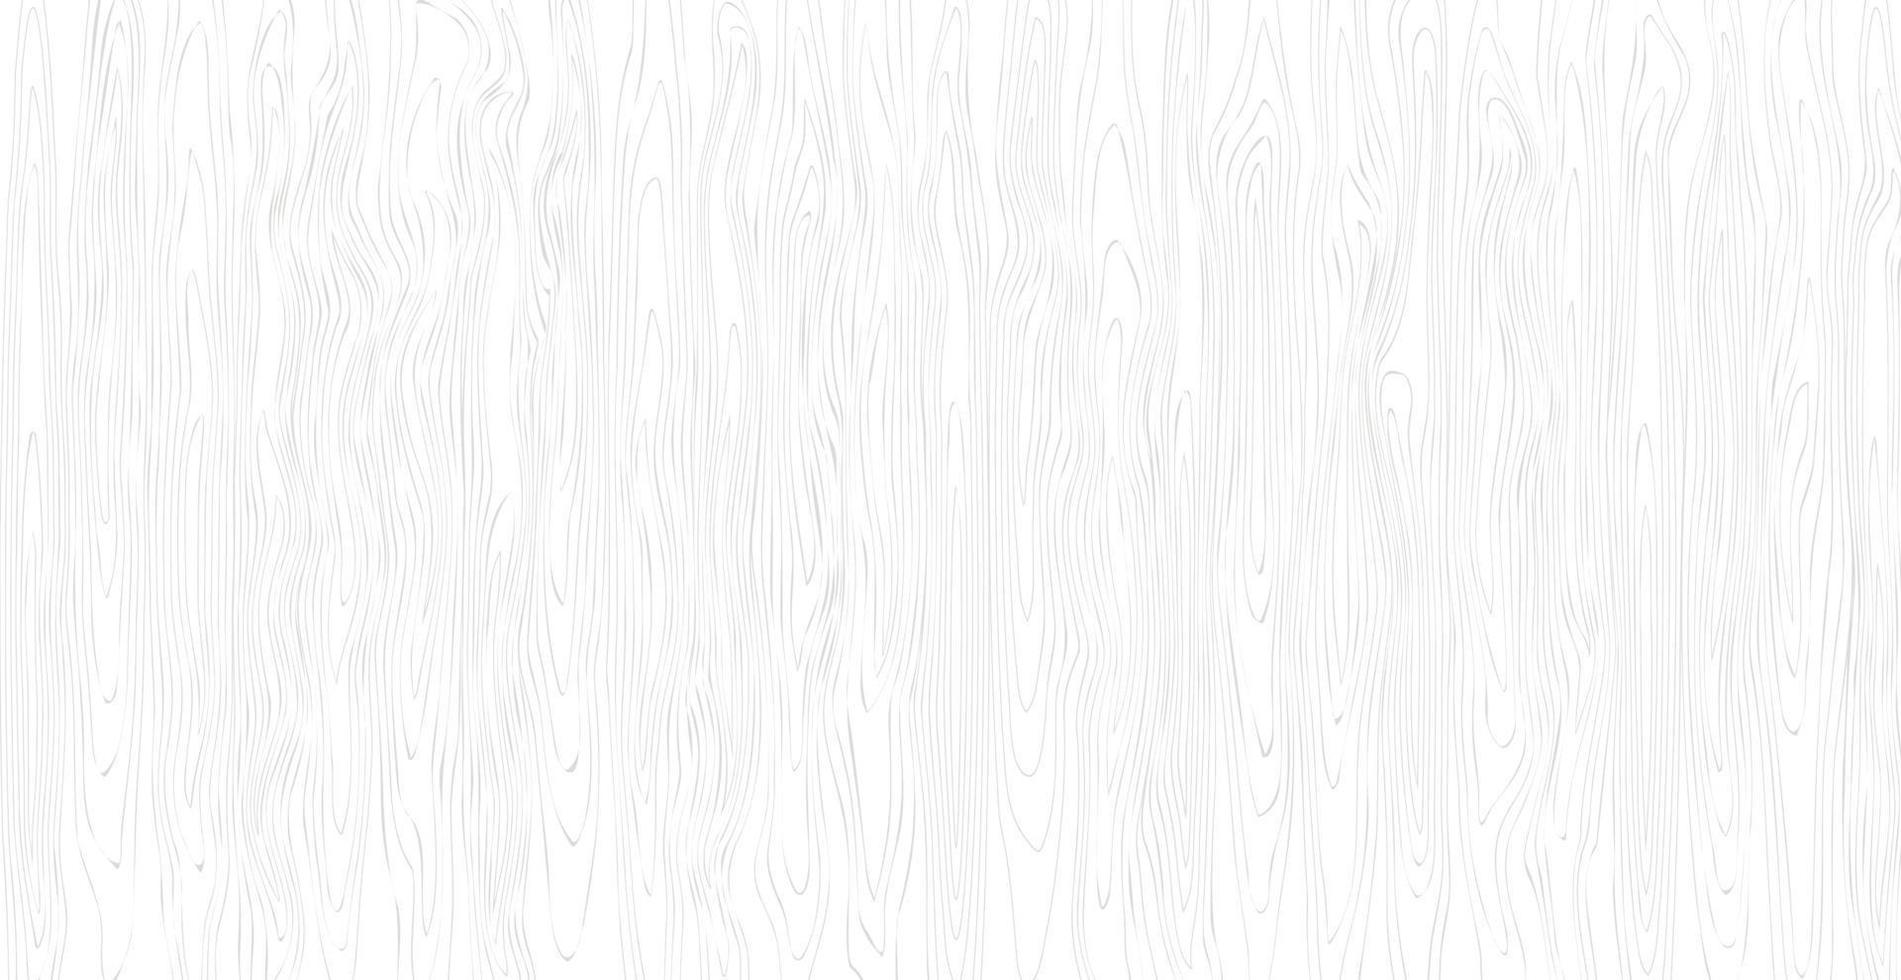 panorama textur av ljust trä med knop - vektor